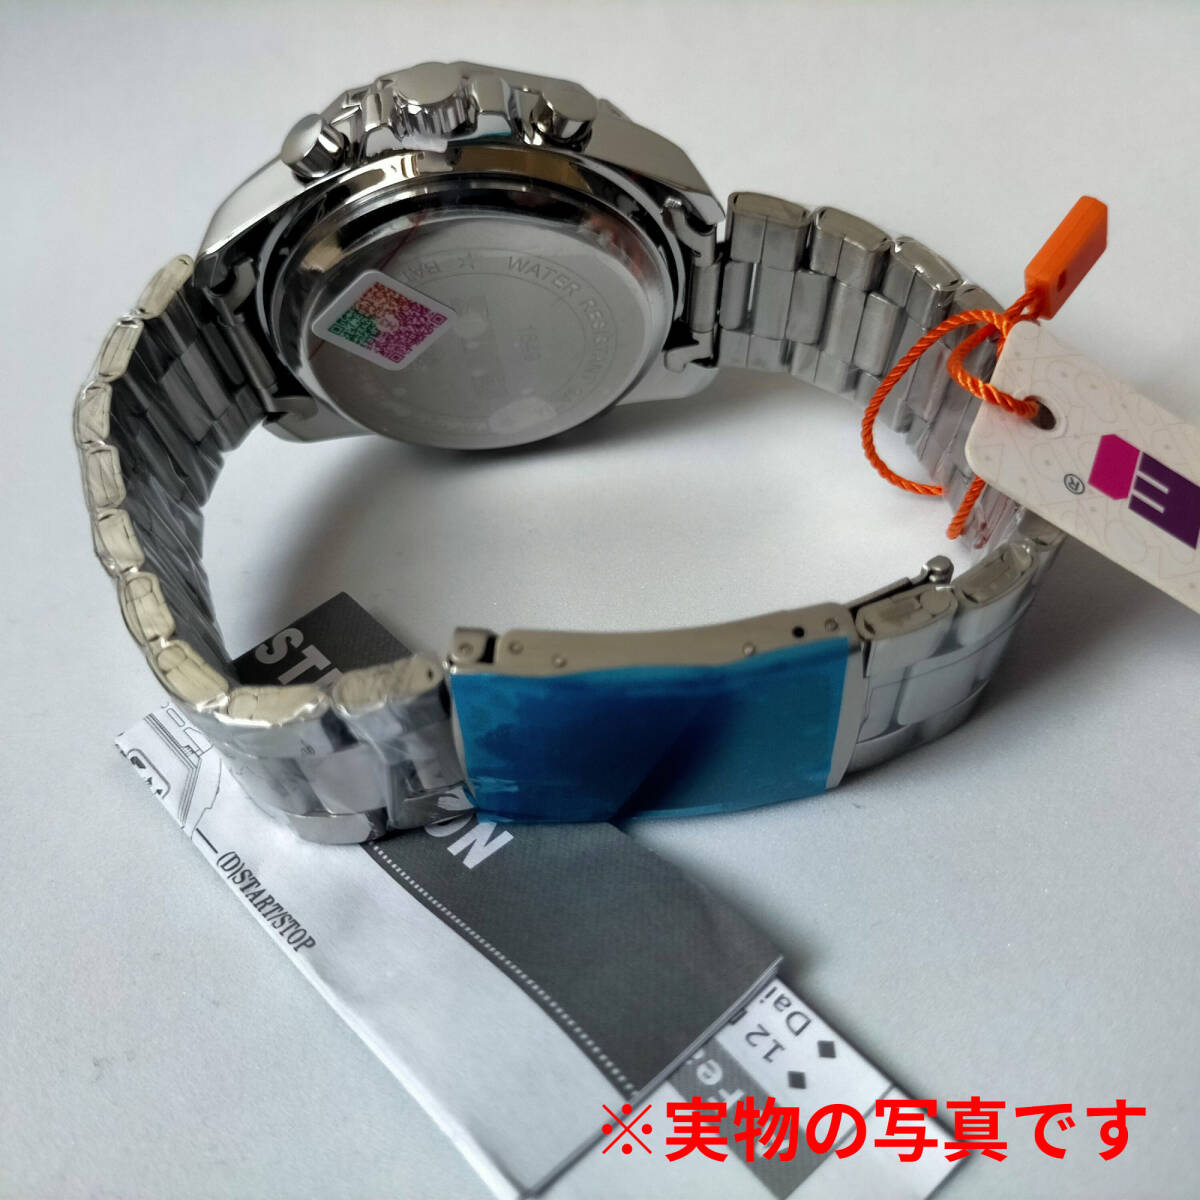 日本製ムーブメント30m防水 デジタル腕時計デジアナ クロノグラフスポーツストップウォッチタイマーステンレスシルバー×ブラック_画像3